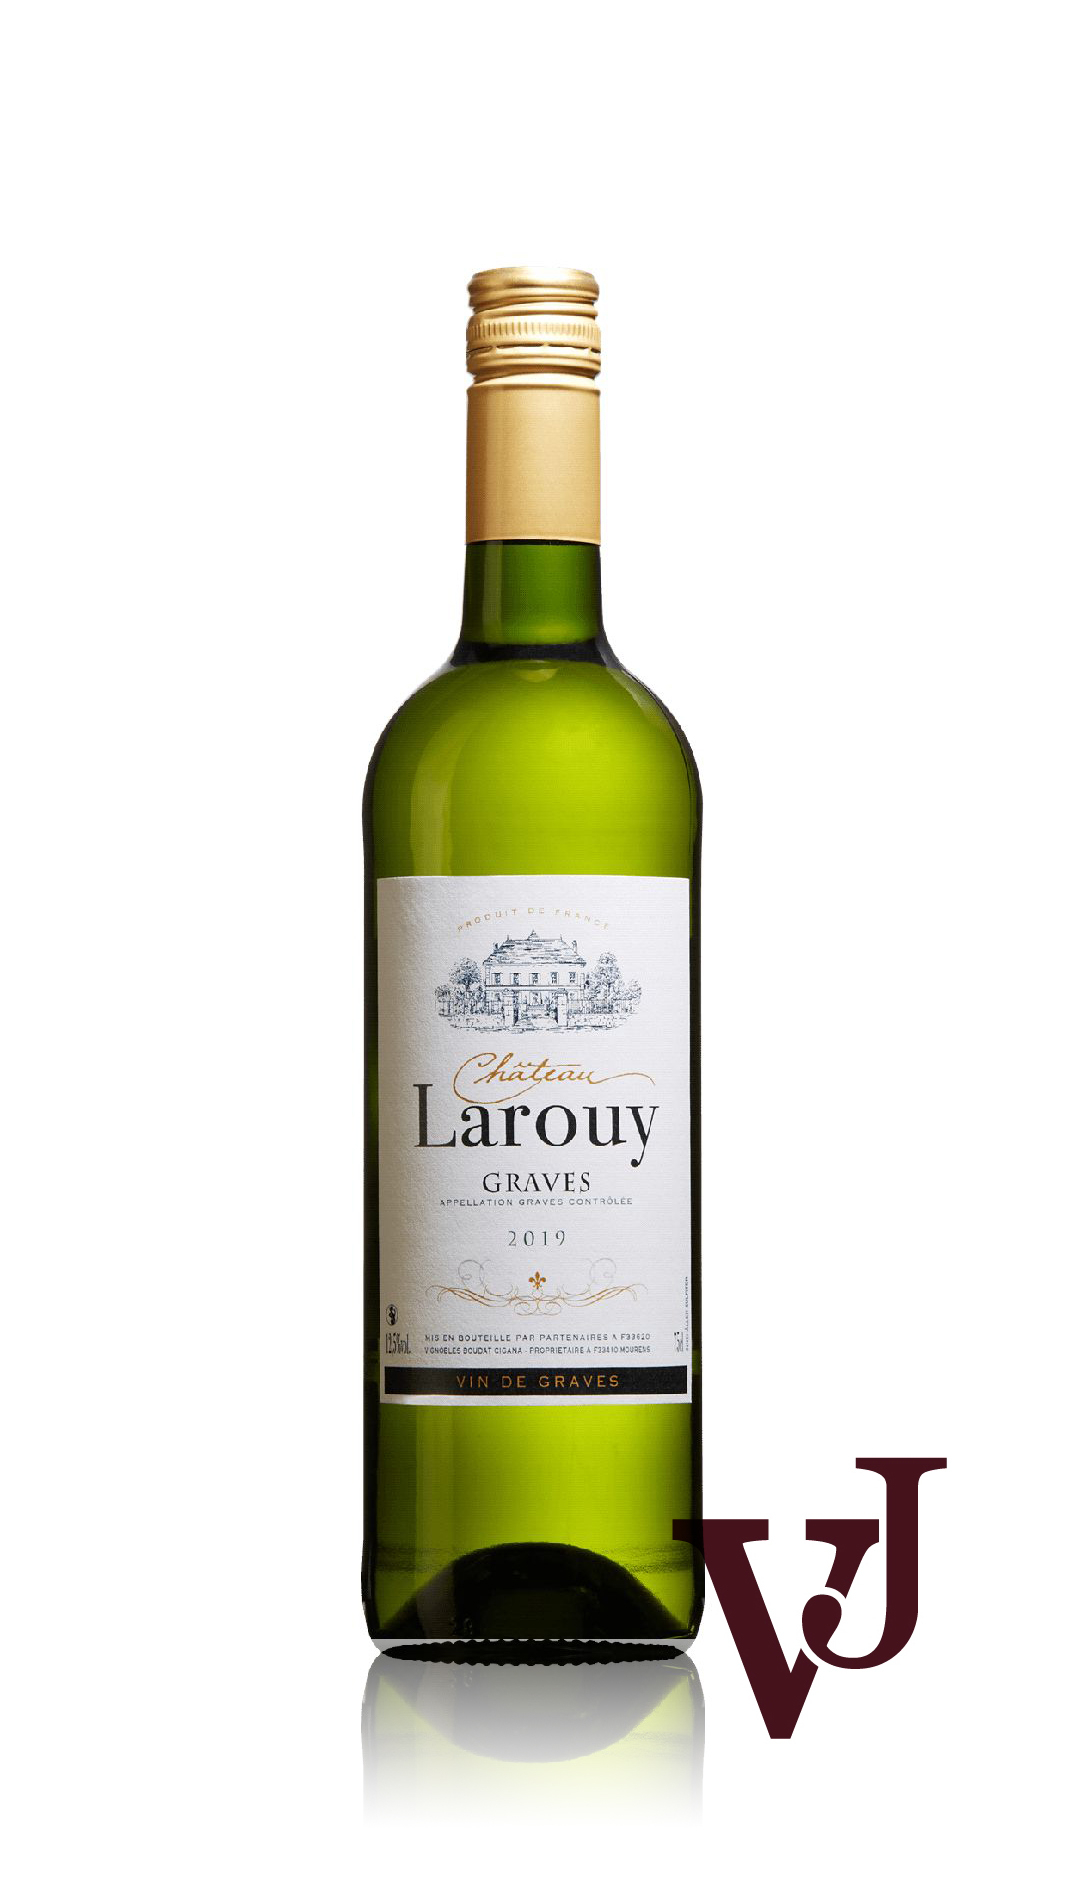 Vitt Vin - Château Larouy Graves Blanc artikel nummer 313401 från producenten Chateau Larouy från området Frankrike